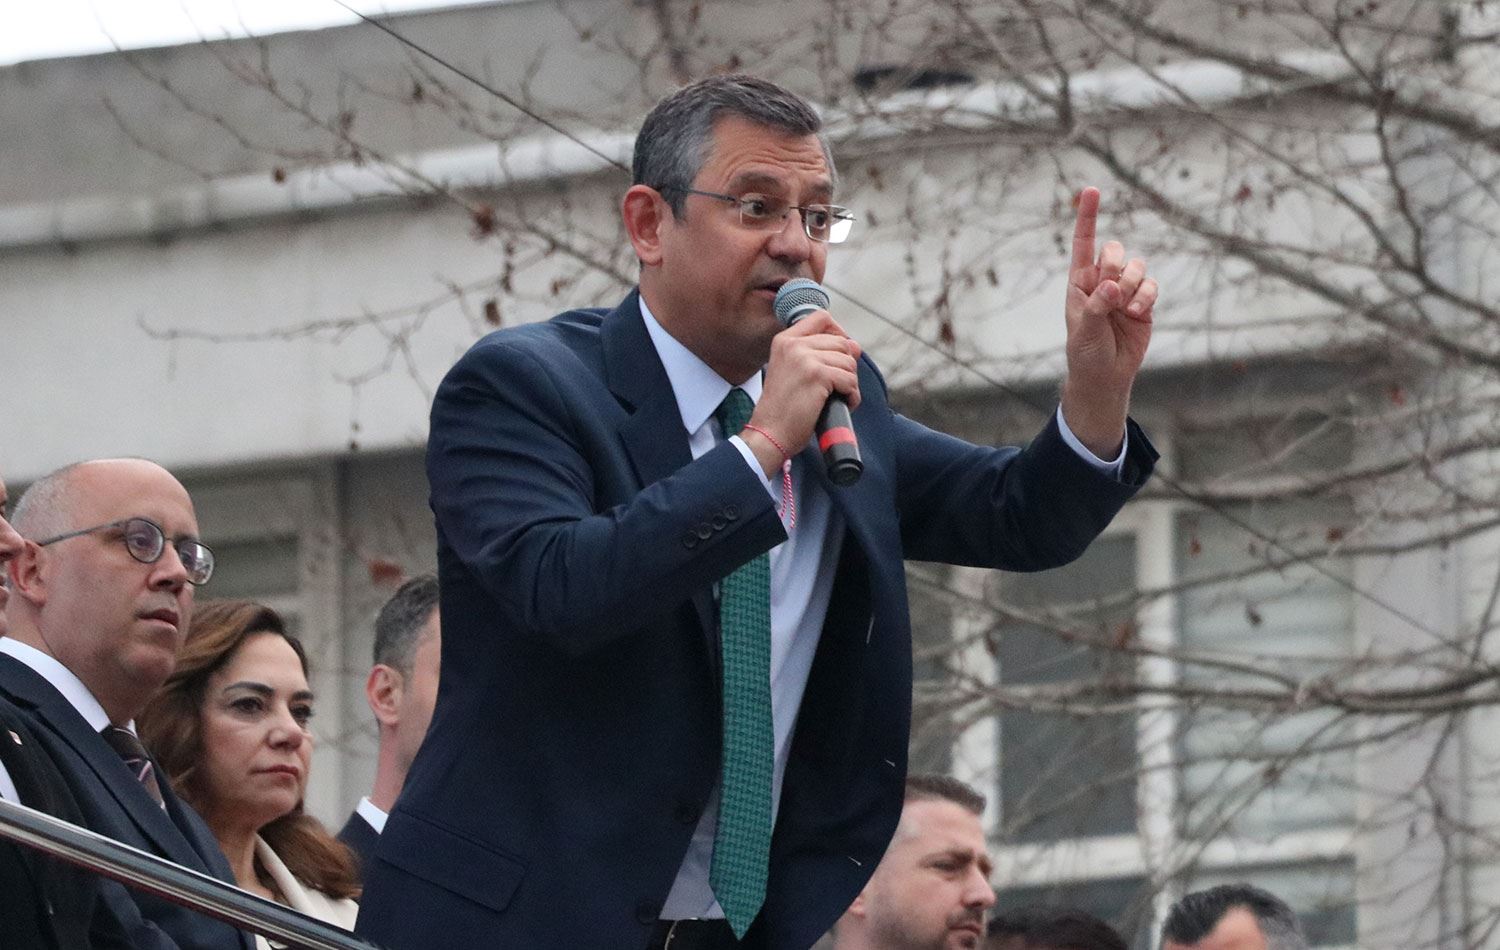 Özel Zonguldak'ta AKP ve MHP'yi eleştirdi: Domuz bağcıların avukatlarını yanlarına aldılar